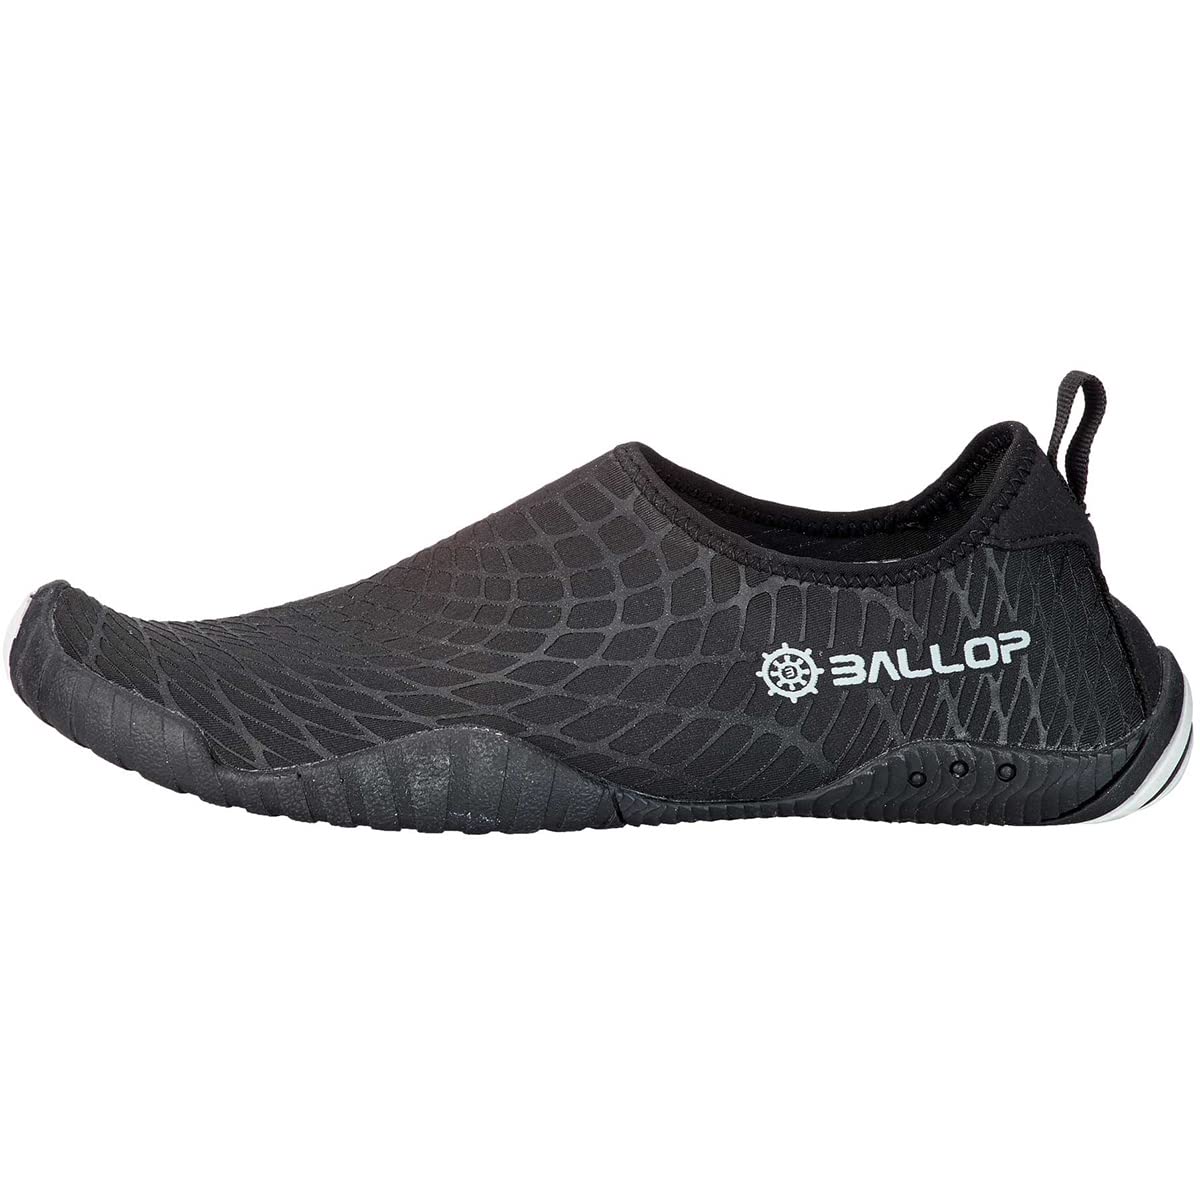 BALLOP Spider Schuhe, Unisex, für Erwachsene, Unisex - Erwachsene, Spider, schwarz